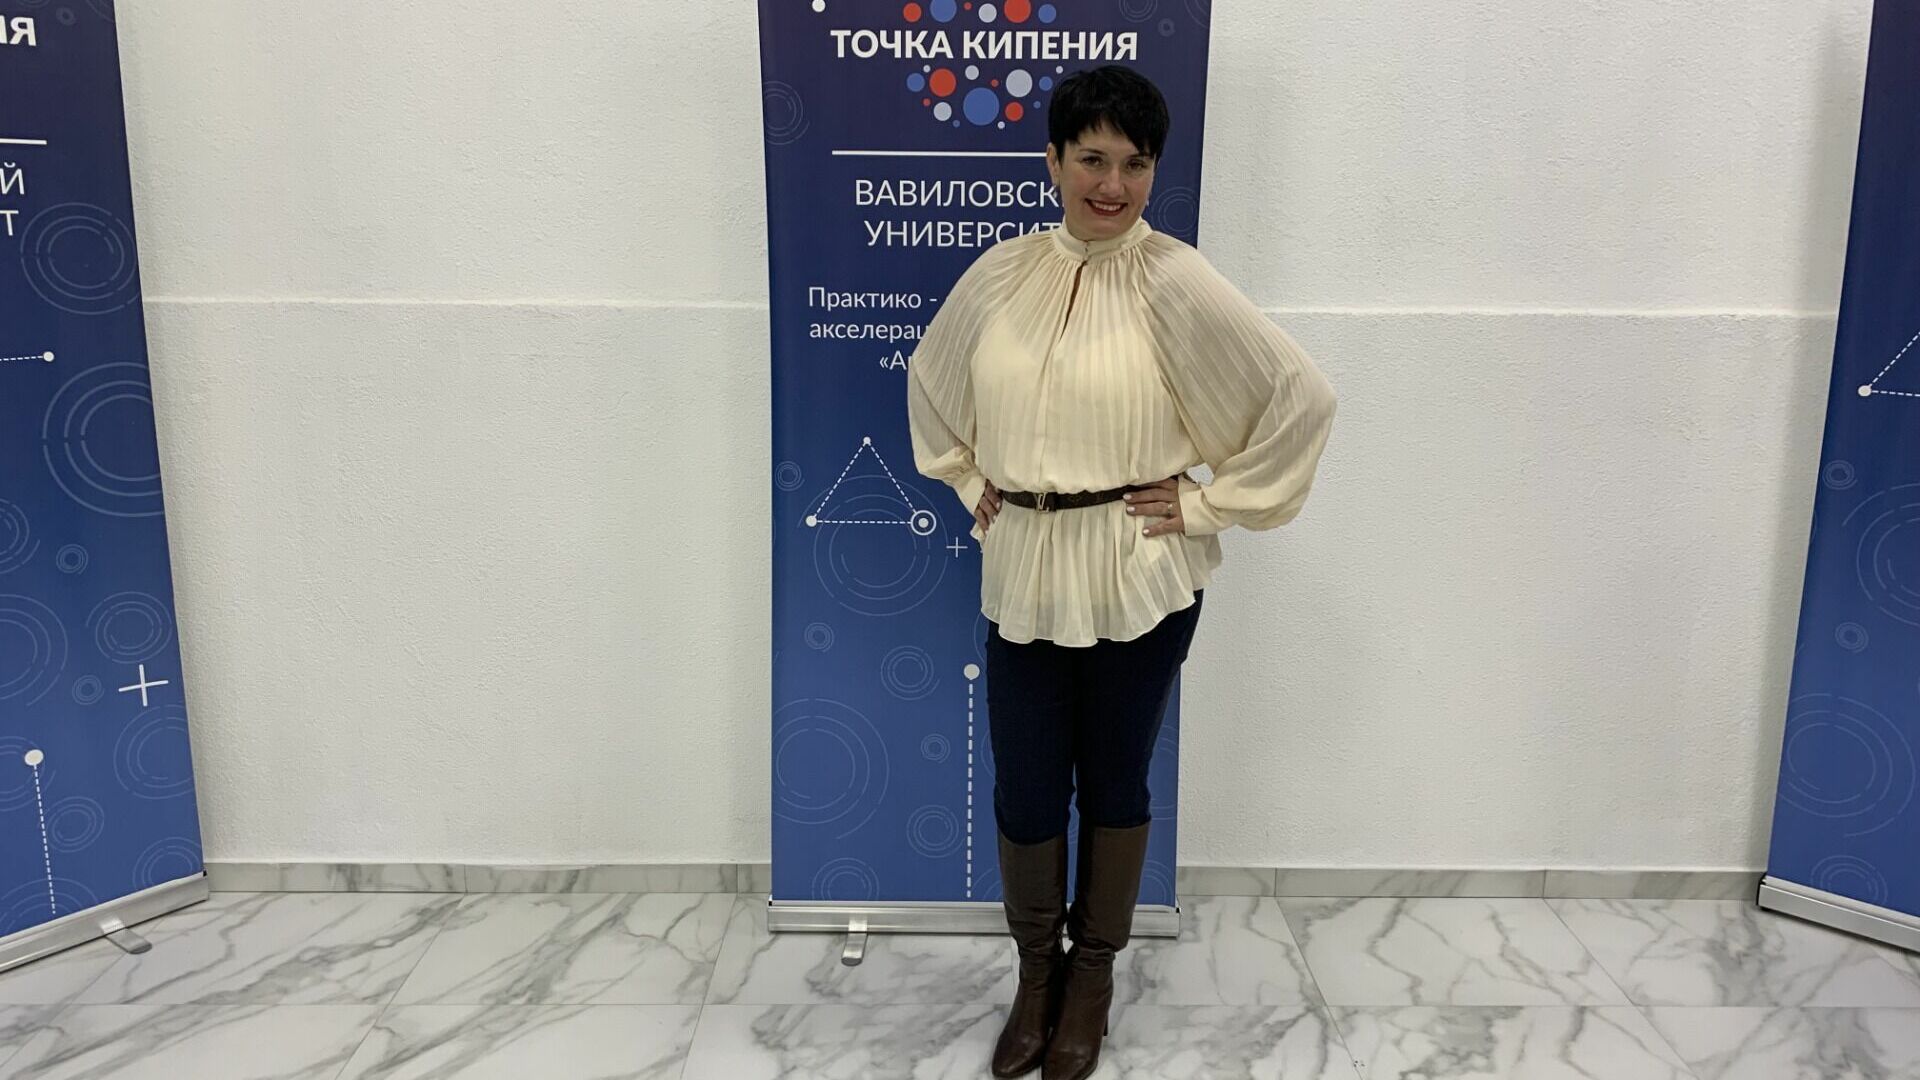 Анна Кровякова стала участником открытия Точки кипения в Саратове